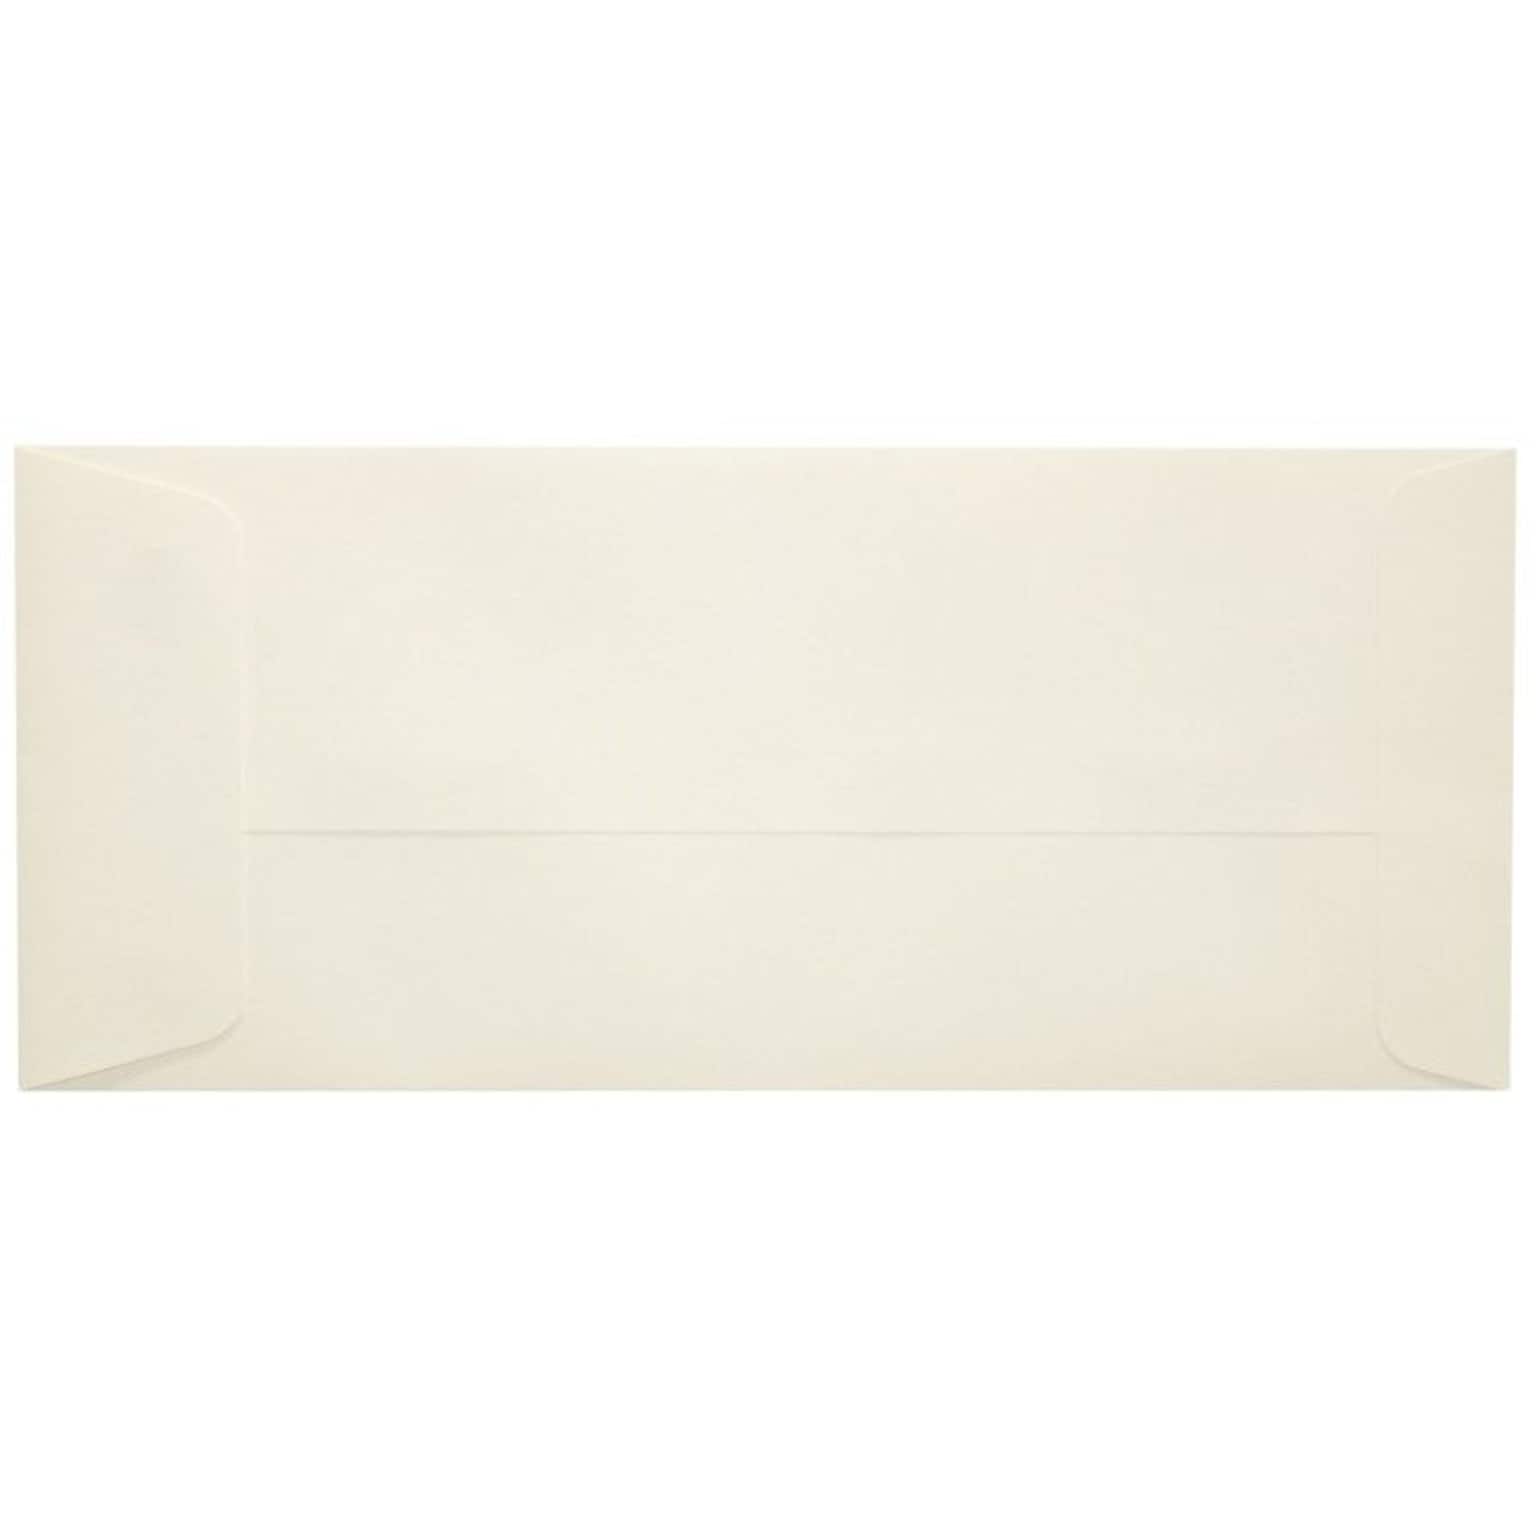 LUX 70lb 4 1/8x9 1/2 Open End #10 Envelopes, Natural, 500/BX